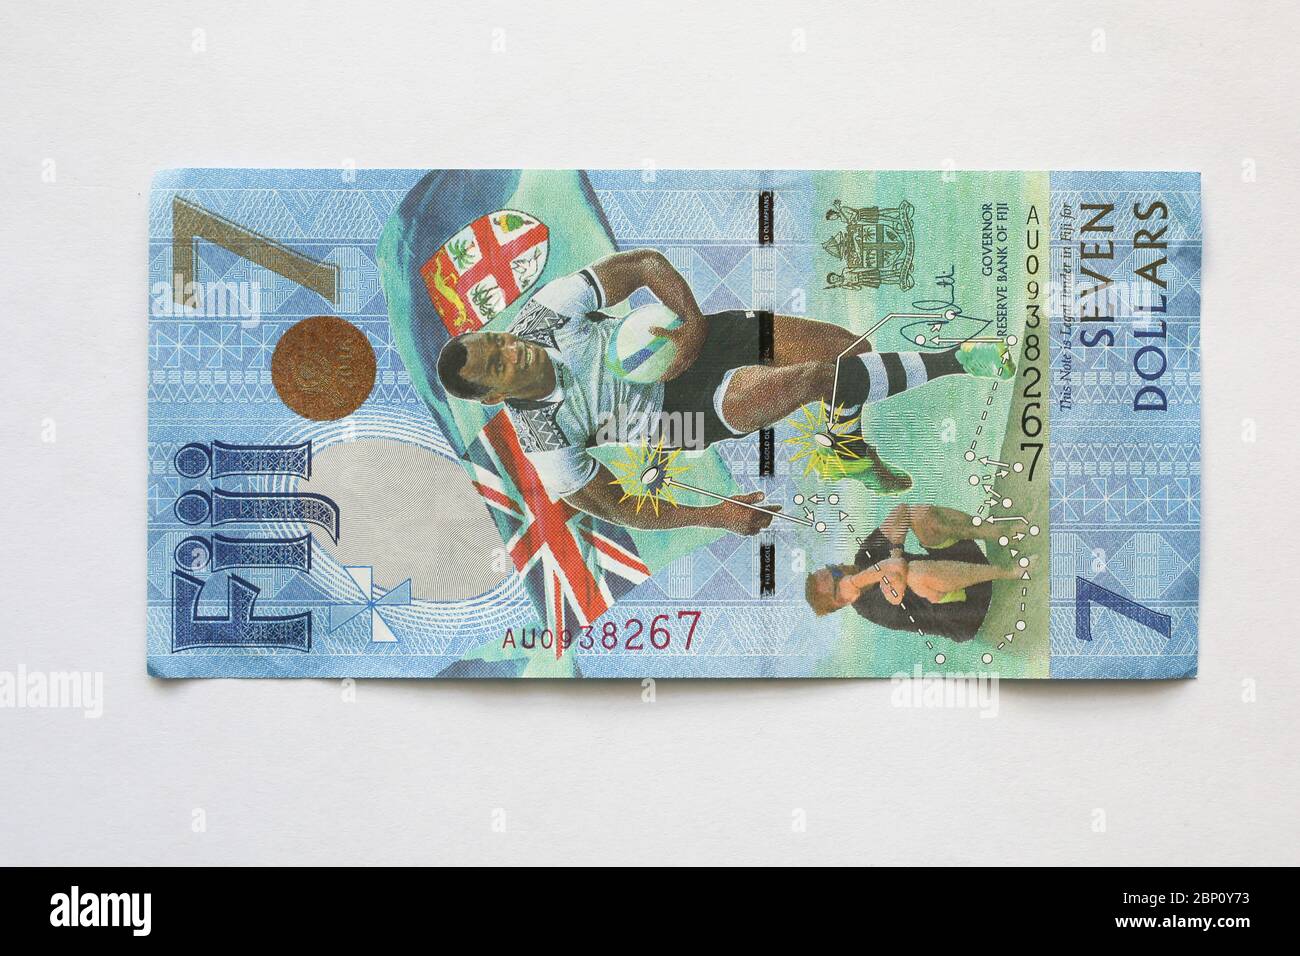 Fidschi 7 Dollar Banknote zum Rugby 7 Gold Medaille Sieg bei den Olympischen Sommerspielen 2016 in Rio, Fidschi, Südpazifik. Stockfoto